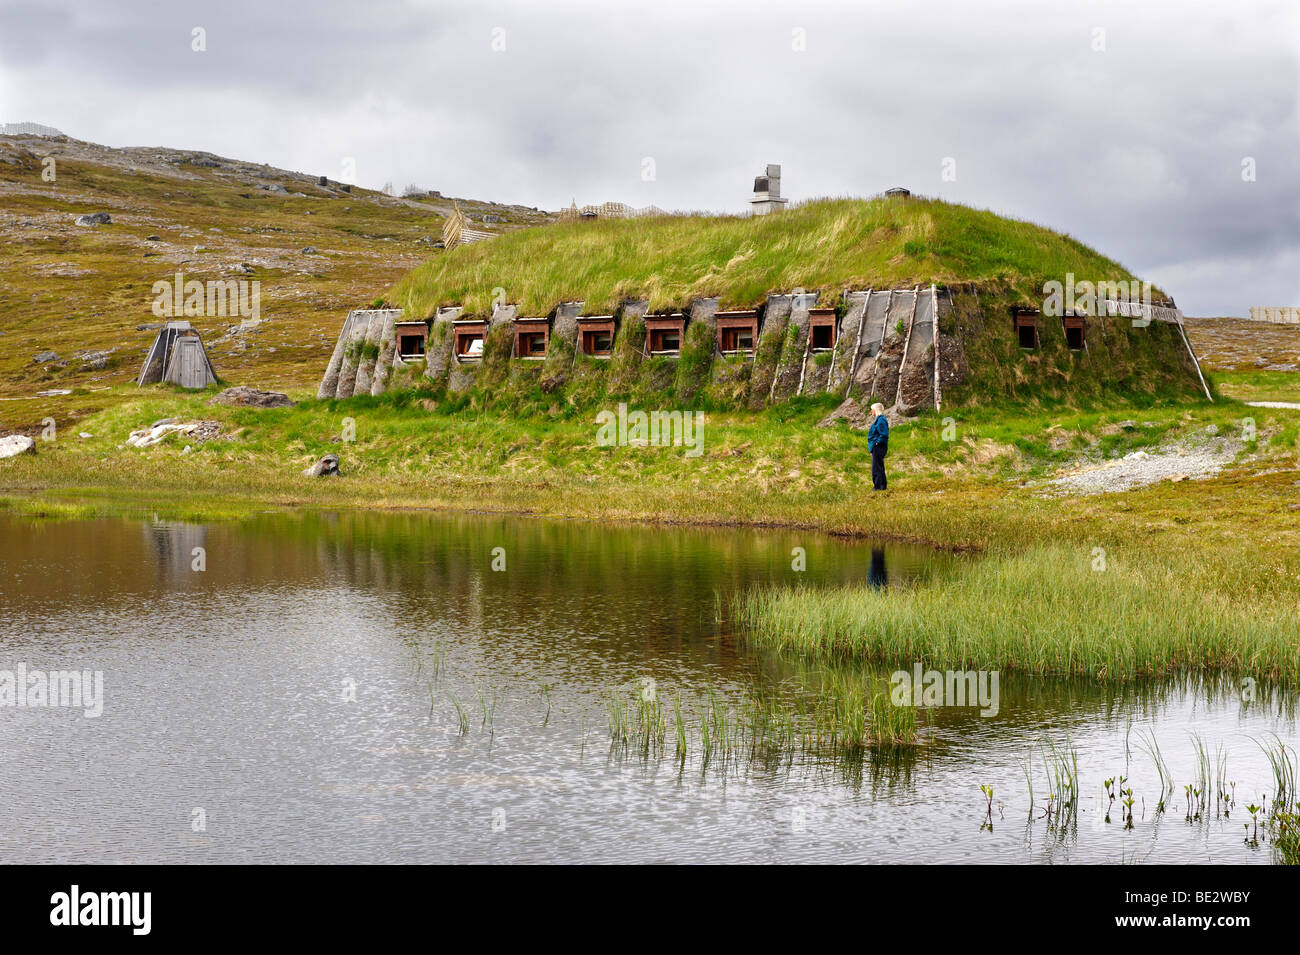 La terre recouverte lodge d'une famille de la population sami, Hammerfest, Norvège, Scandinavie, Europe Banque D'Images